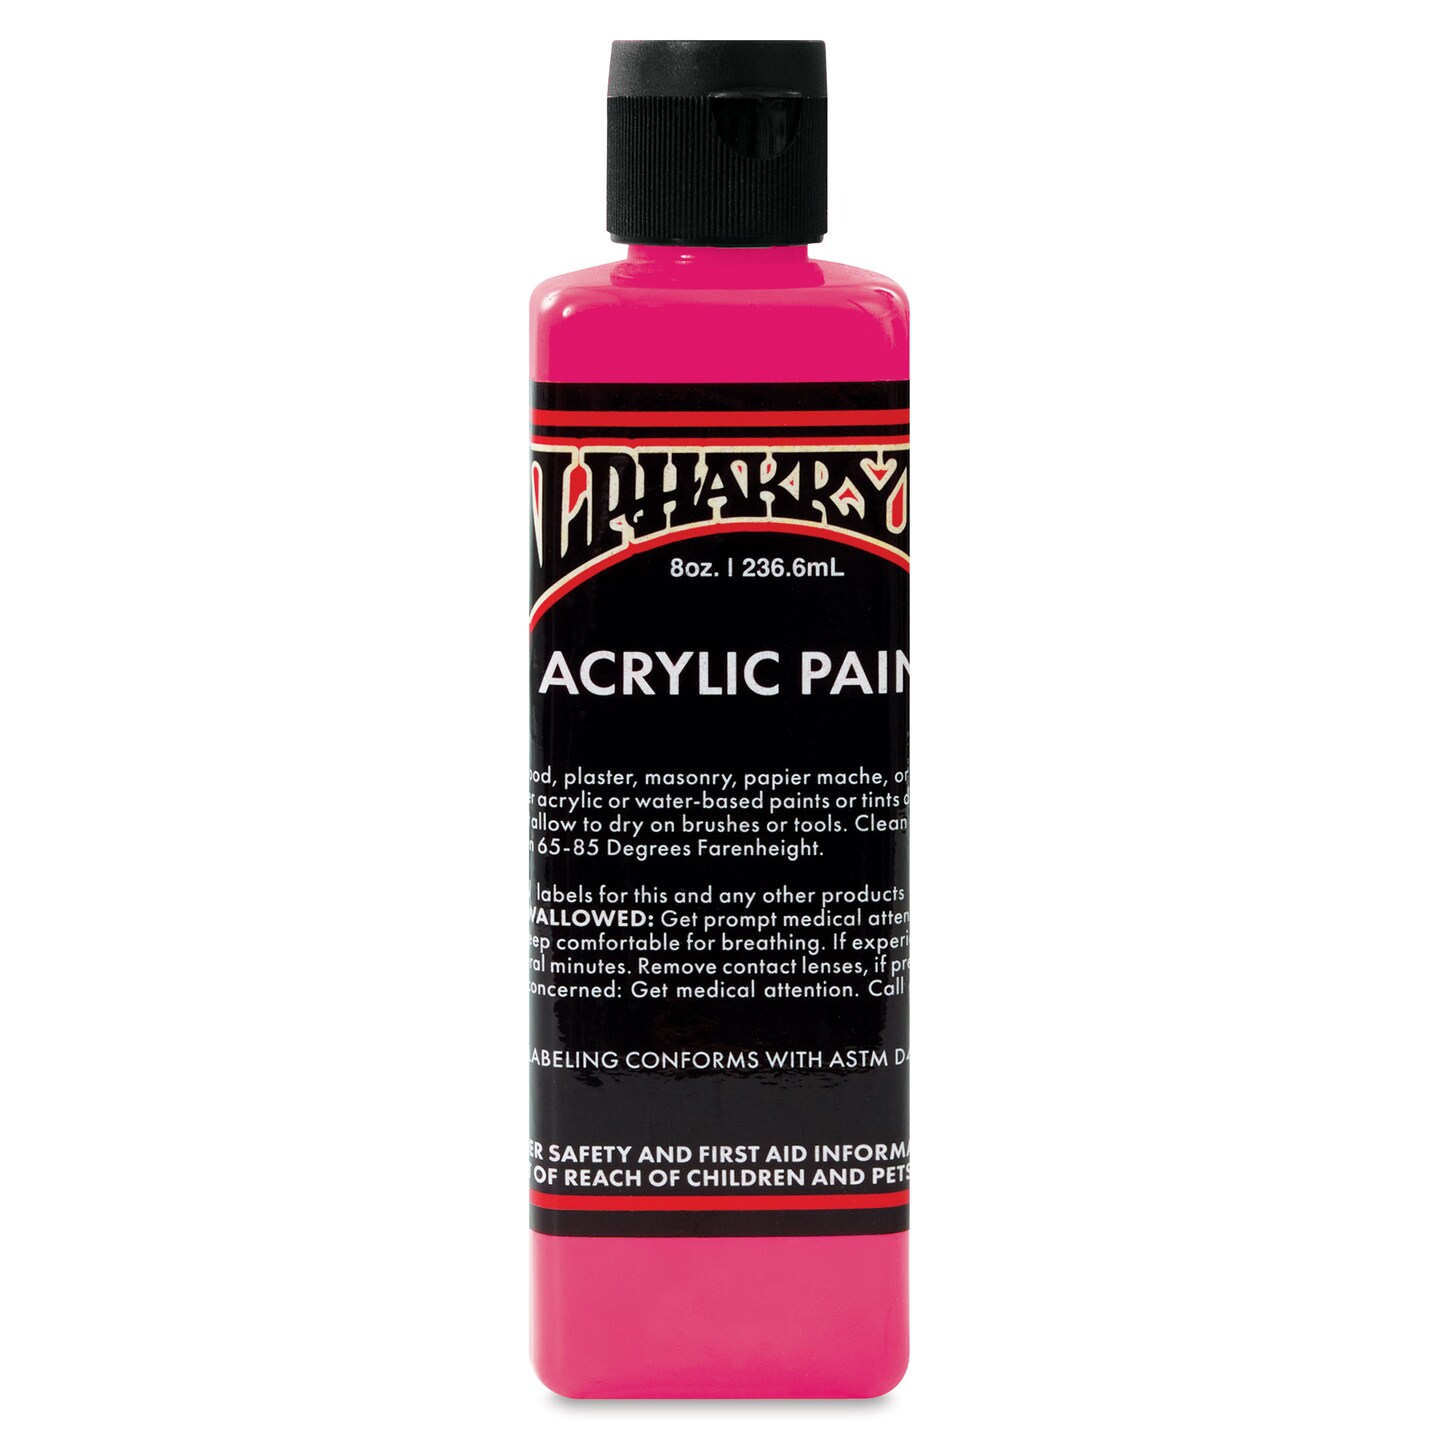 Alpha6 Alphakrylic Acrylic Paint - Electroshock Pink, 8 oz